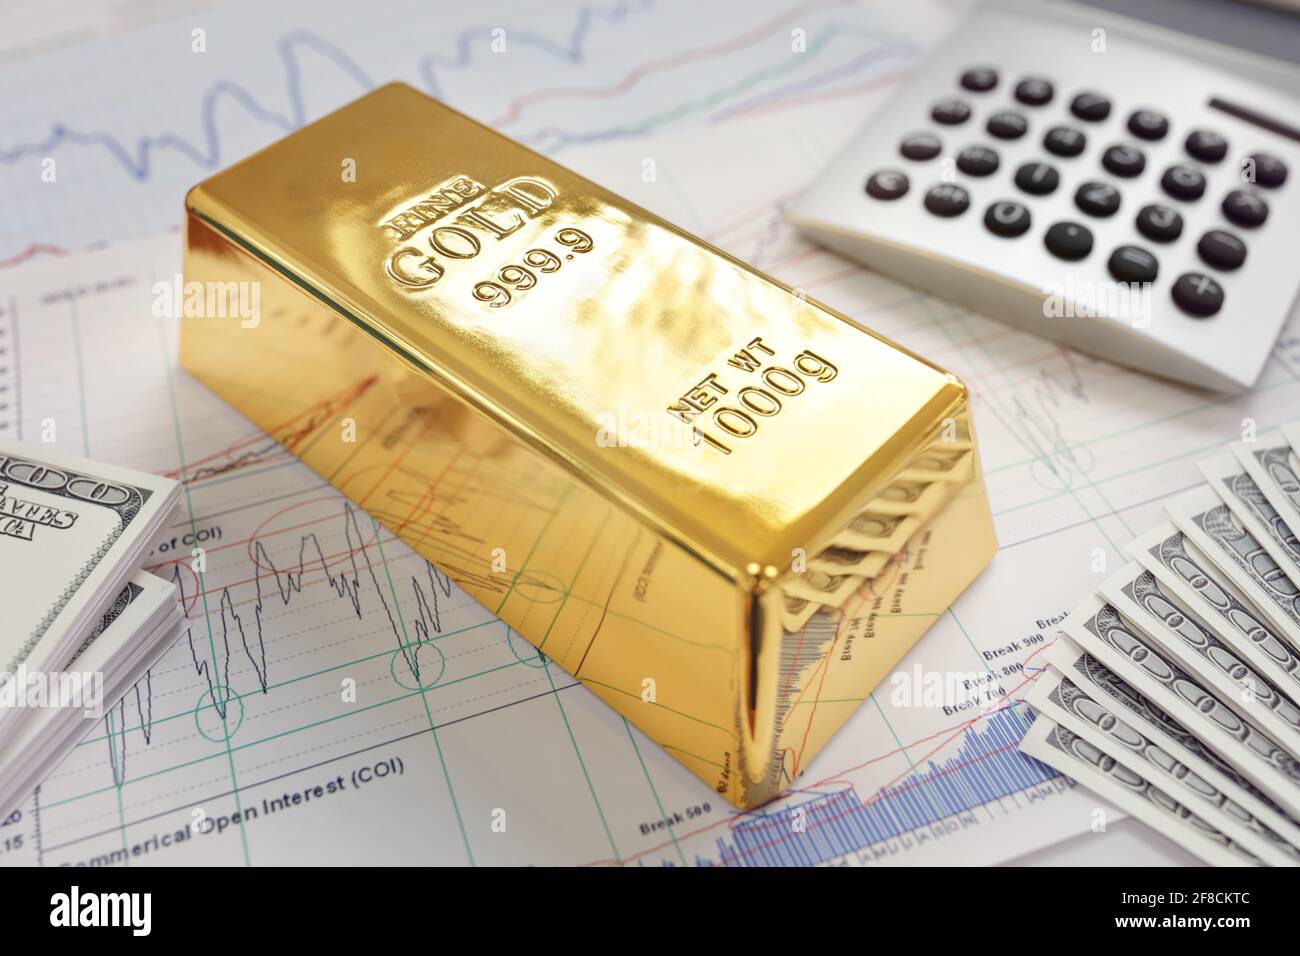 Lingote de oro apoyado en un gráfico de acciones y acciones que representa inversión o banca Foto de stock